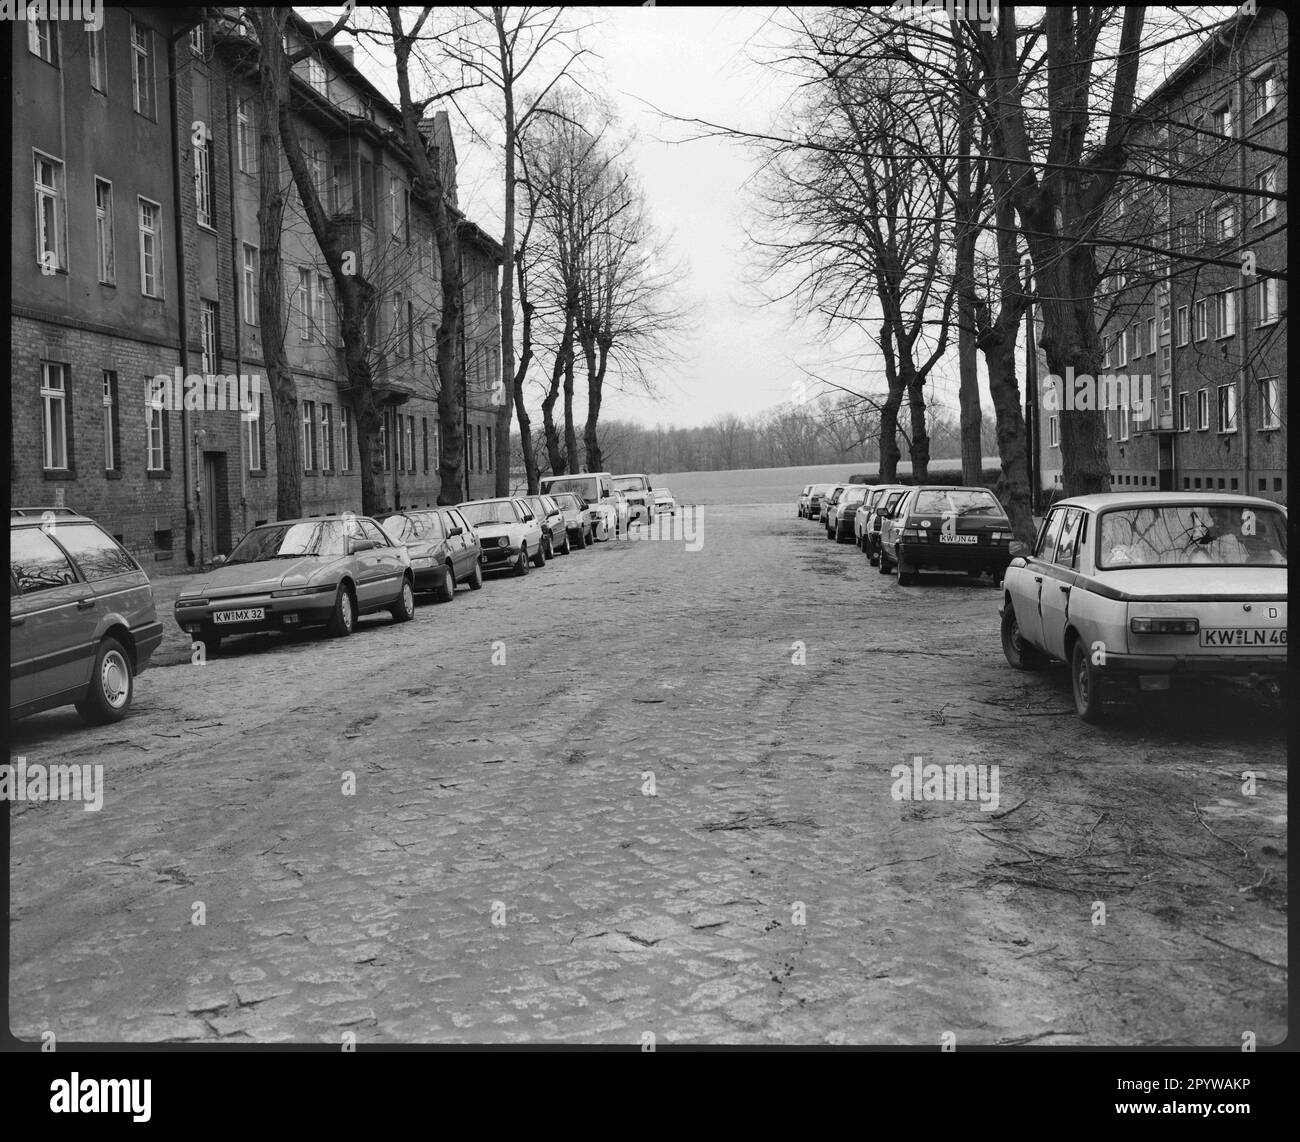 Rue avec voitures garées, arbres et maisons en hiver. Wildau, quartier de Dahme-Spreewald, Brandebourg. Photo, 1993. Banque D'Images